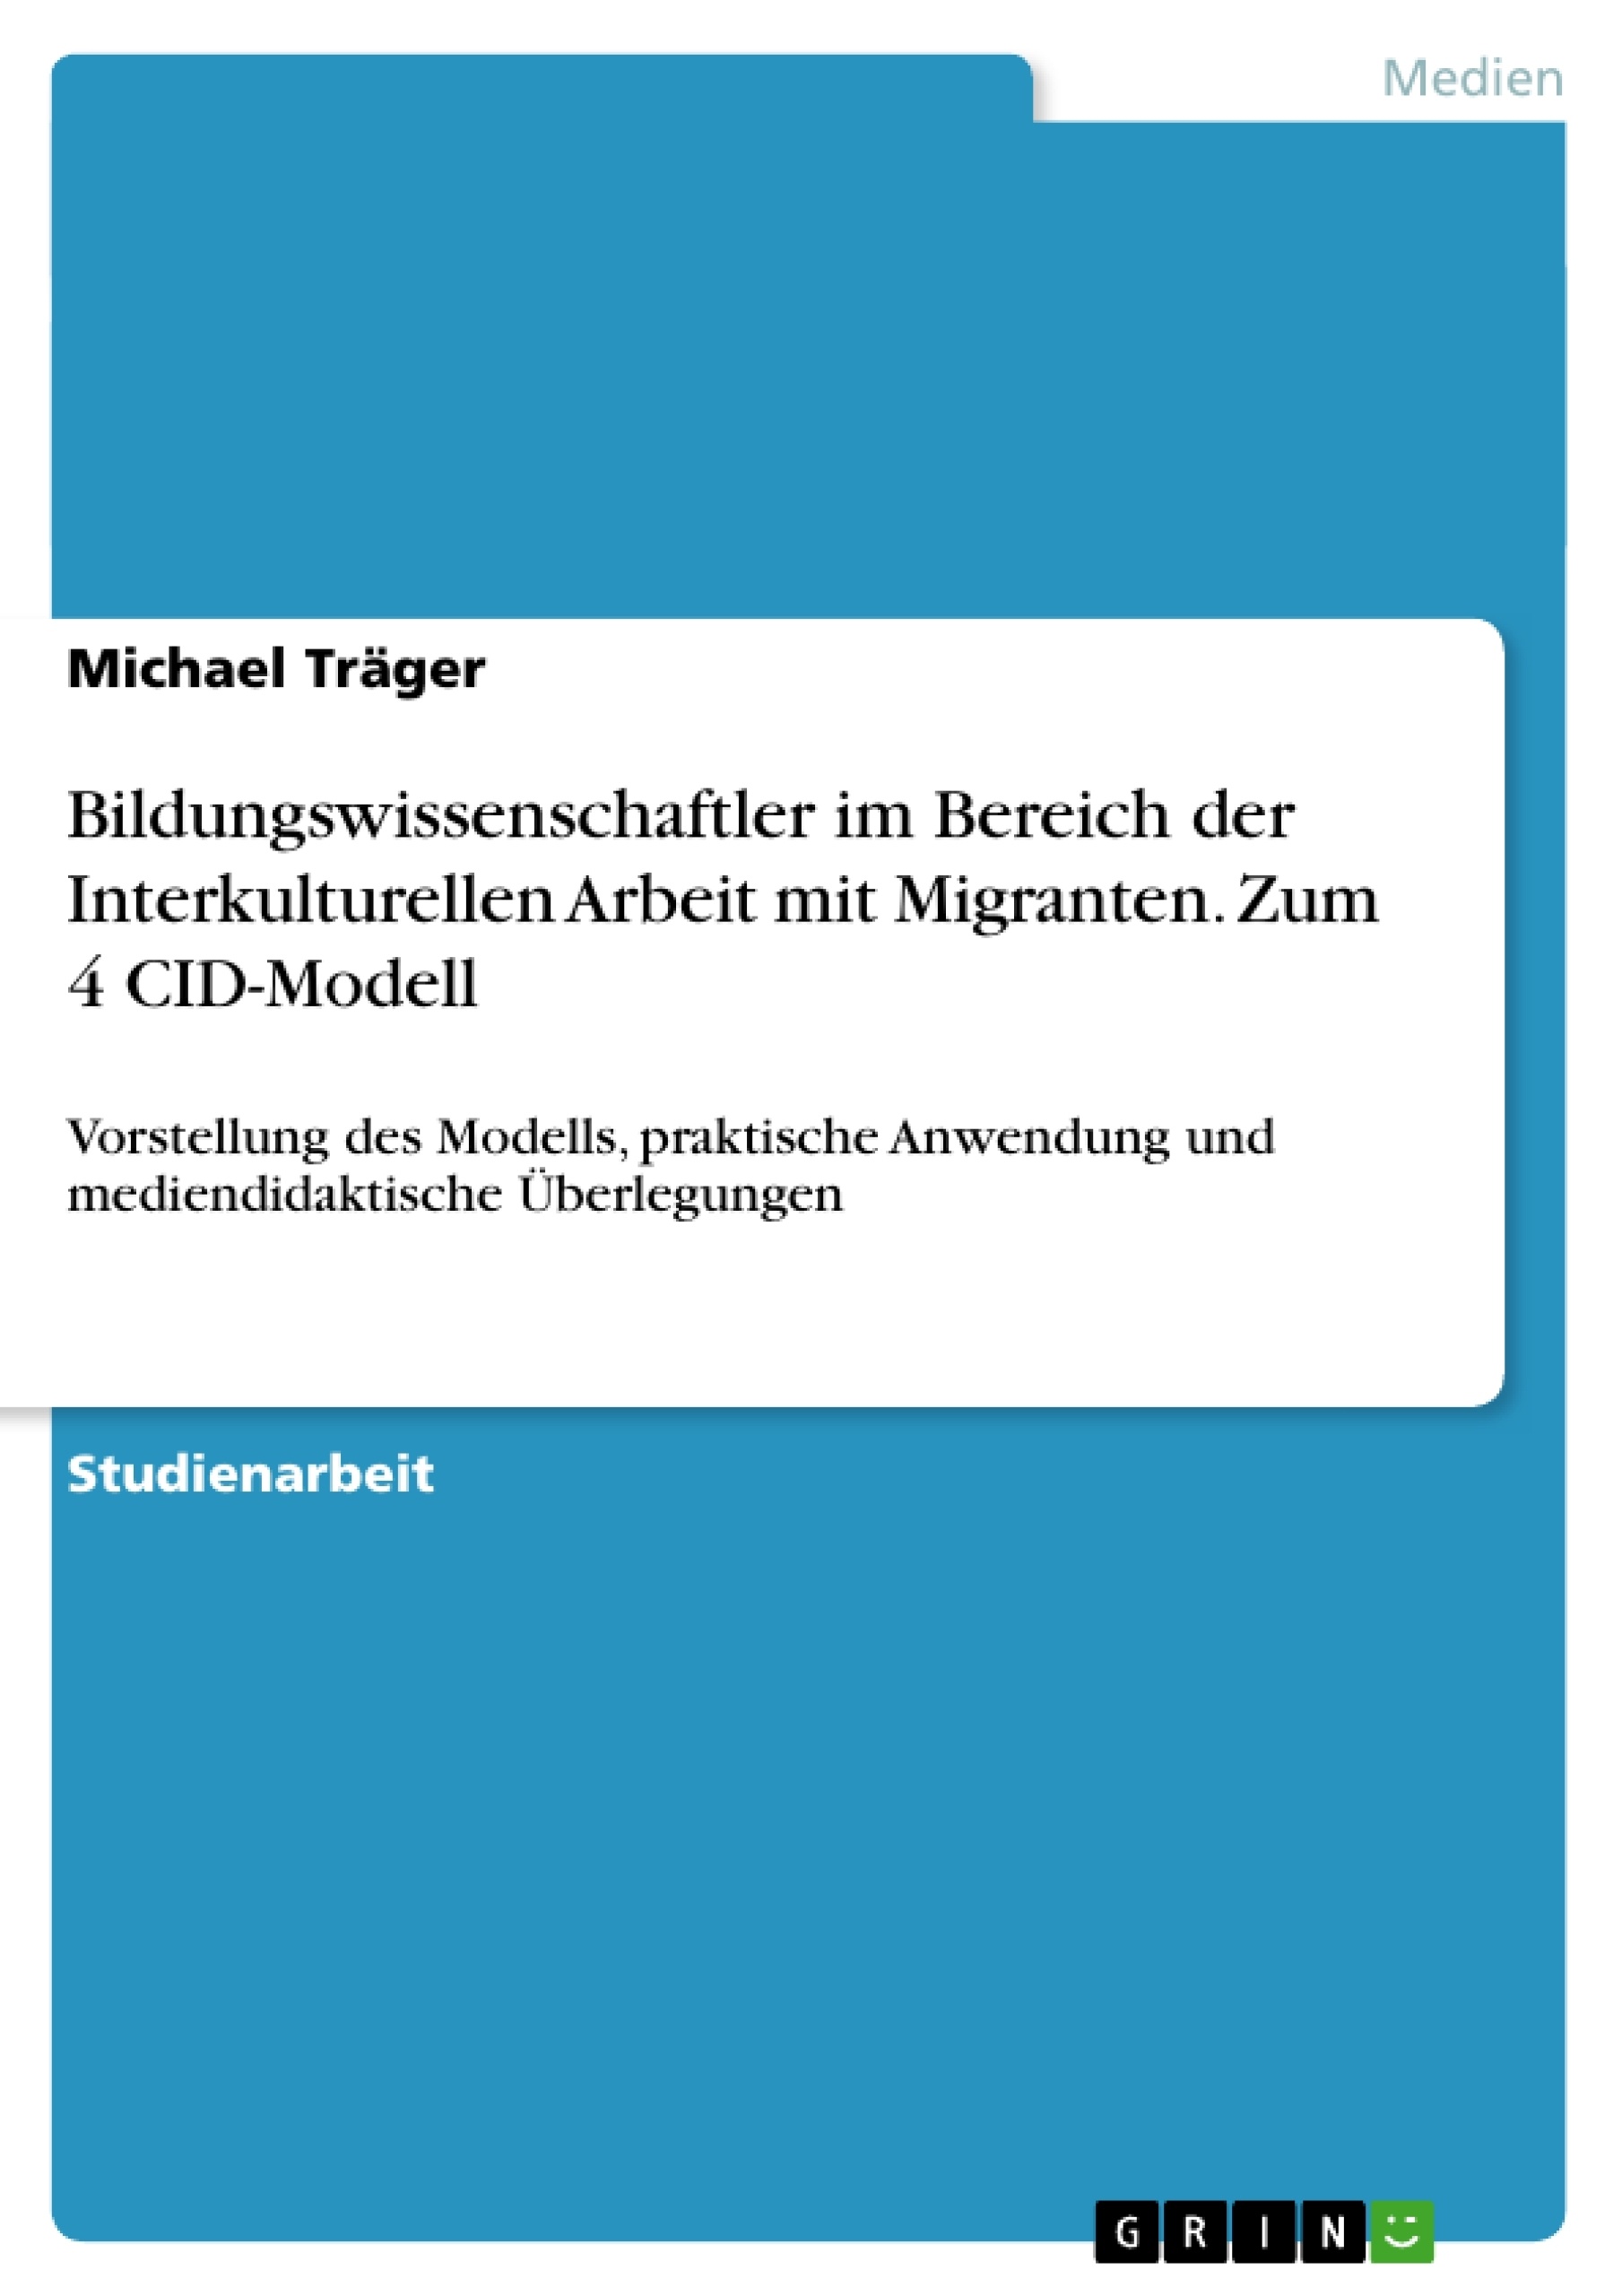 Title: Bildungswissenschaftler im Bereich der Interkulturellen Arbeit mit Migranten. Zum 4 CID-Modell